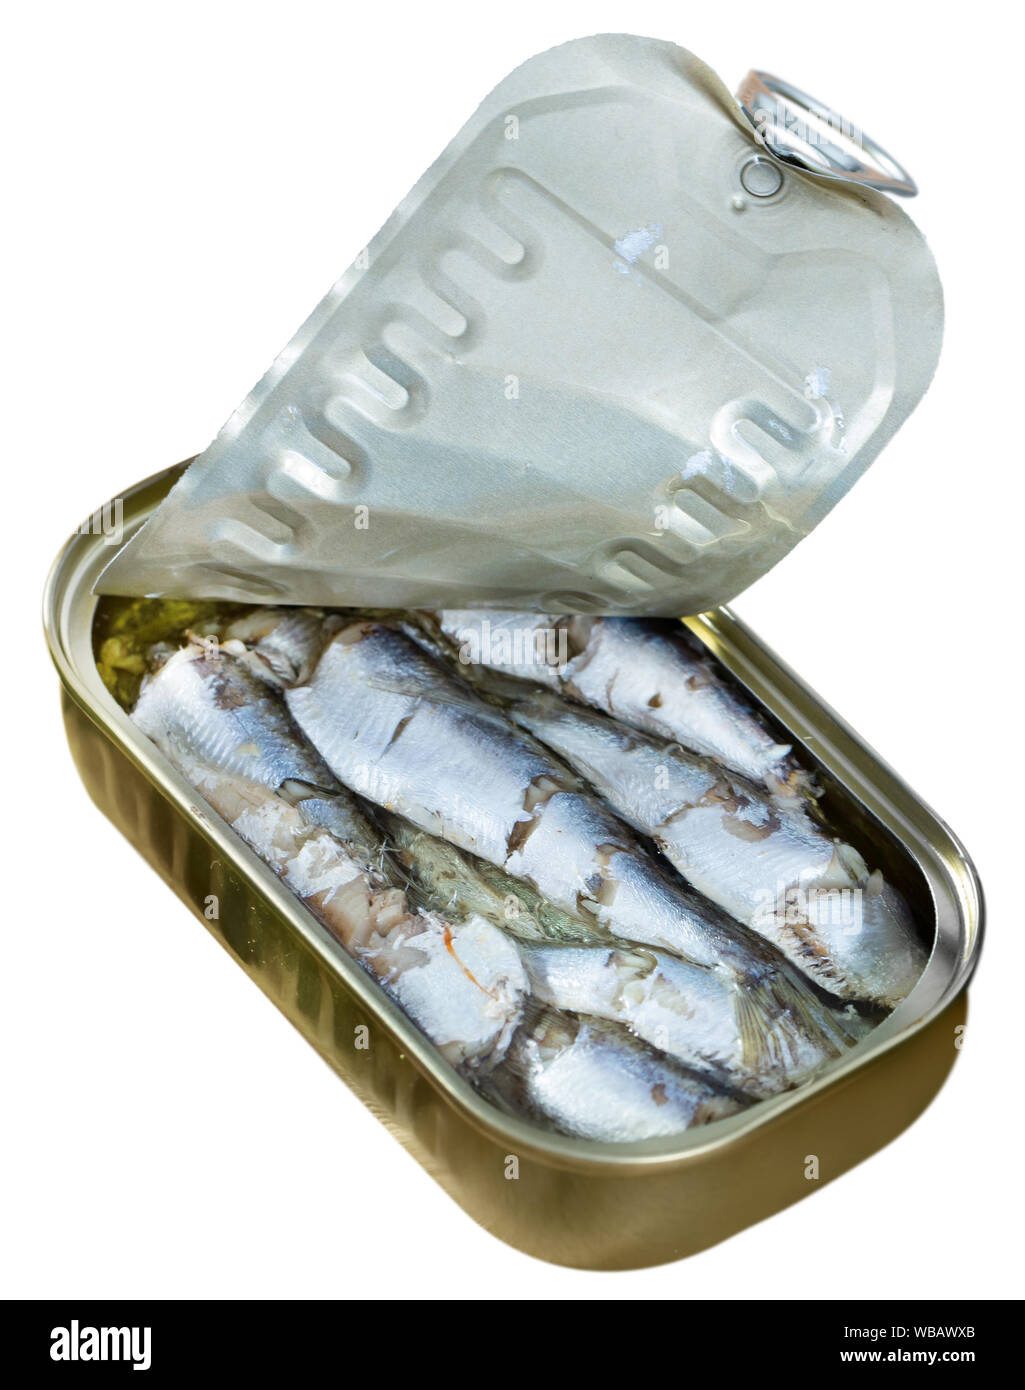 Vista ingrandita di aperto può affumicato sardine in olio. Isolato su sfondo bianco Foto Stock